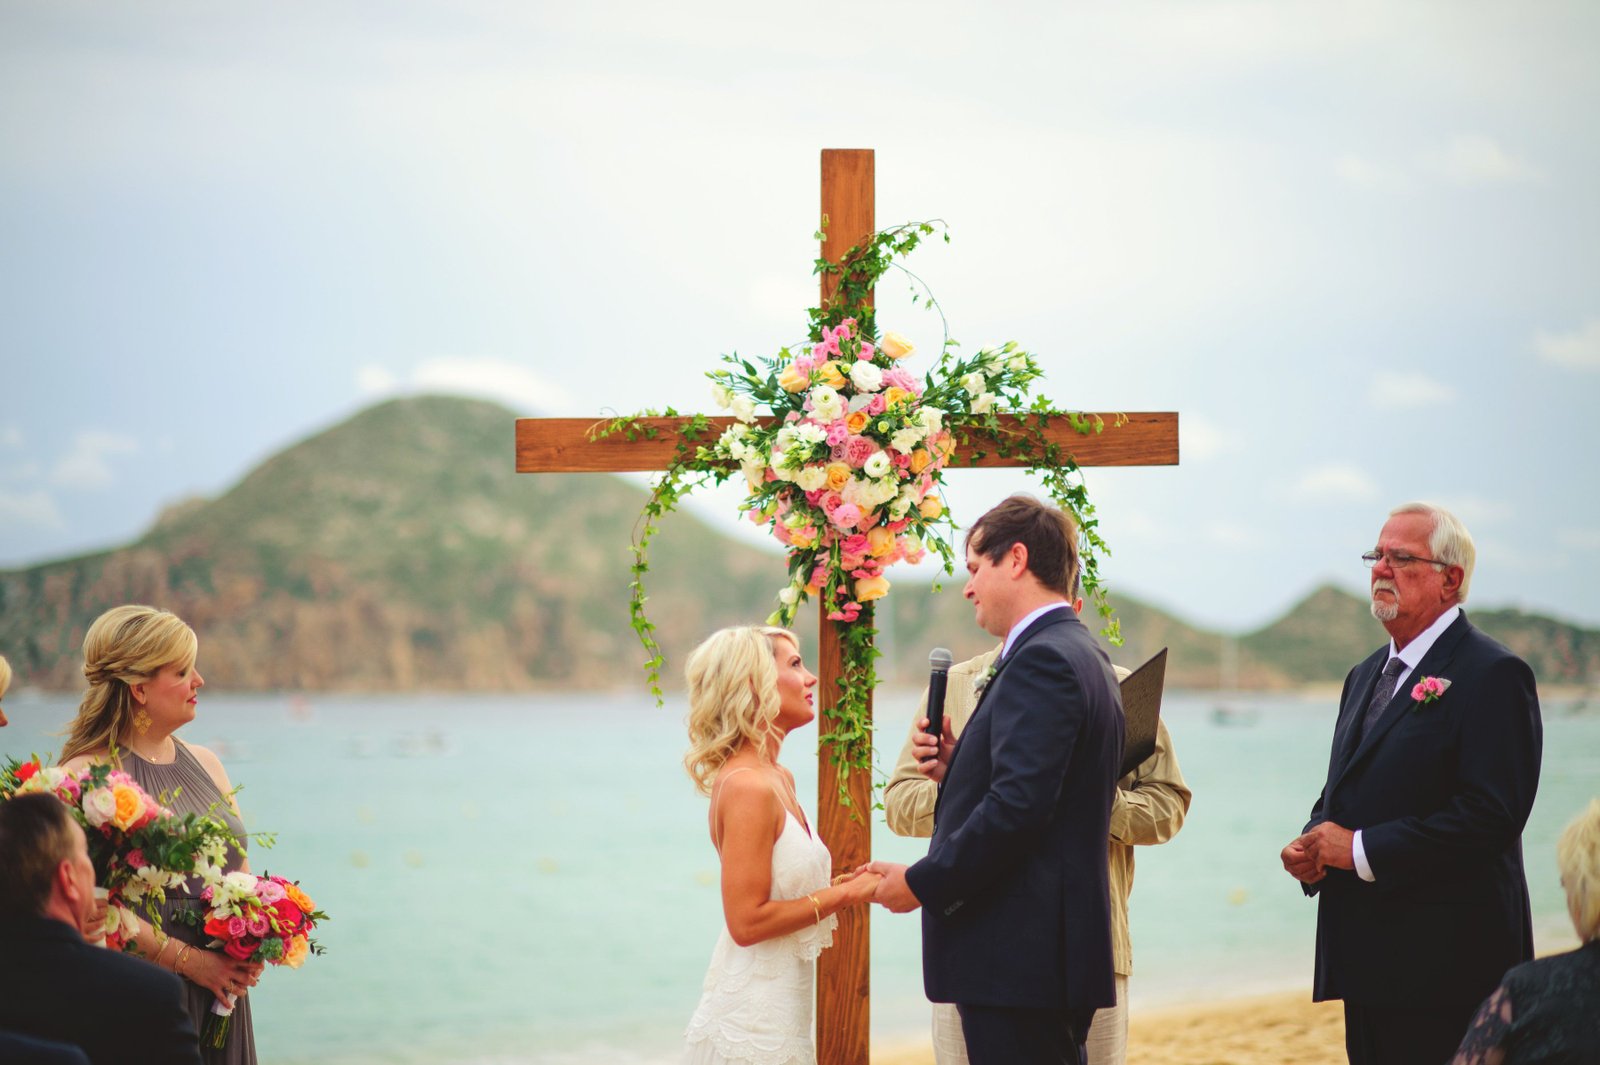 Beach Wedding Ceremony in Mexico at Villa la Estancia by Cabo Wedding Services